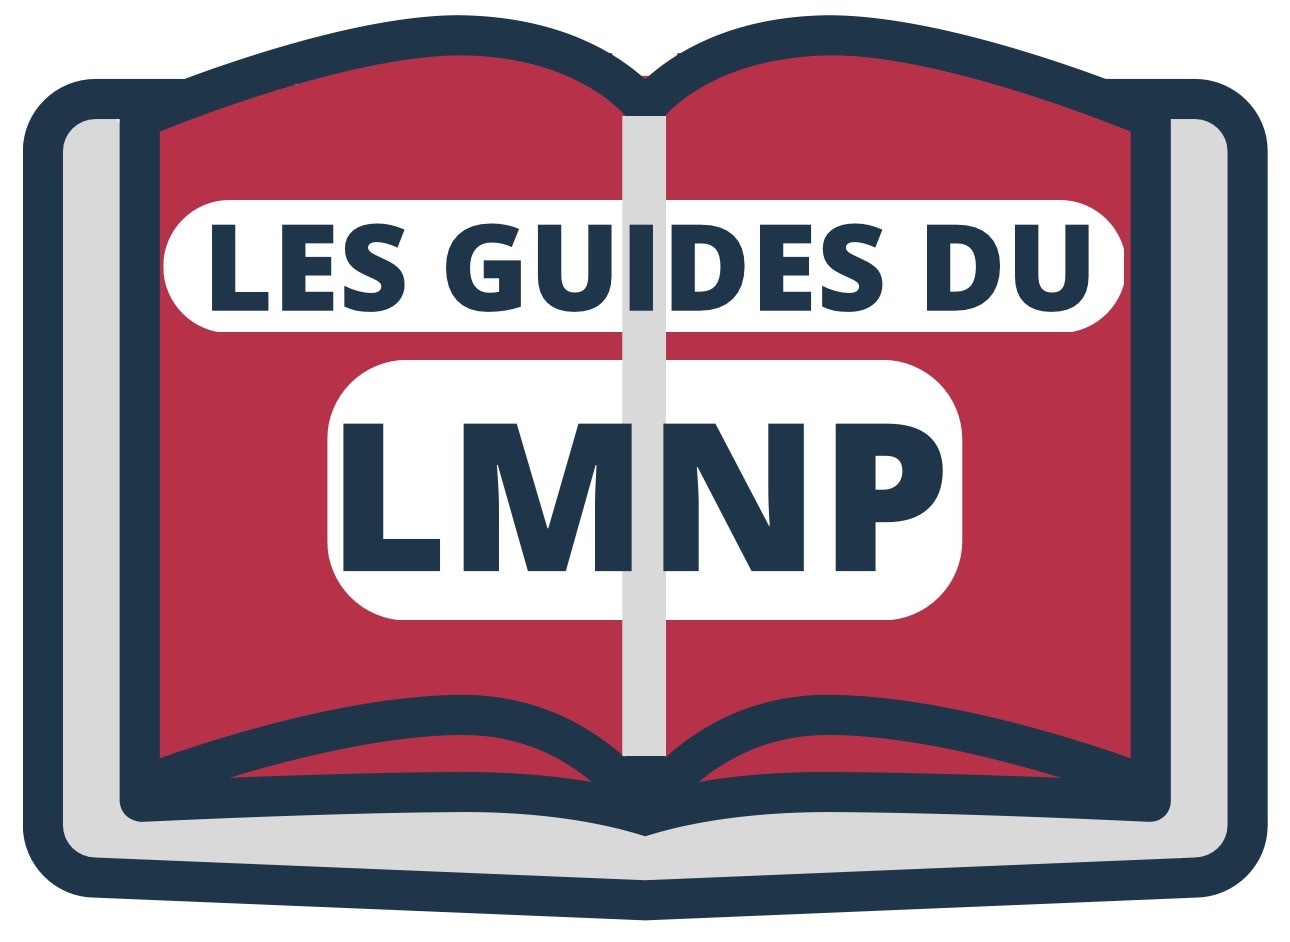 les guides du lmnp - Attentif LMNP